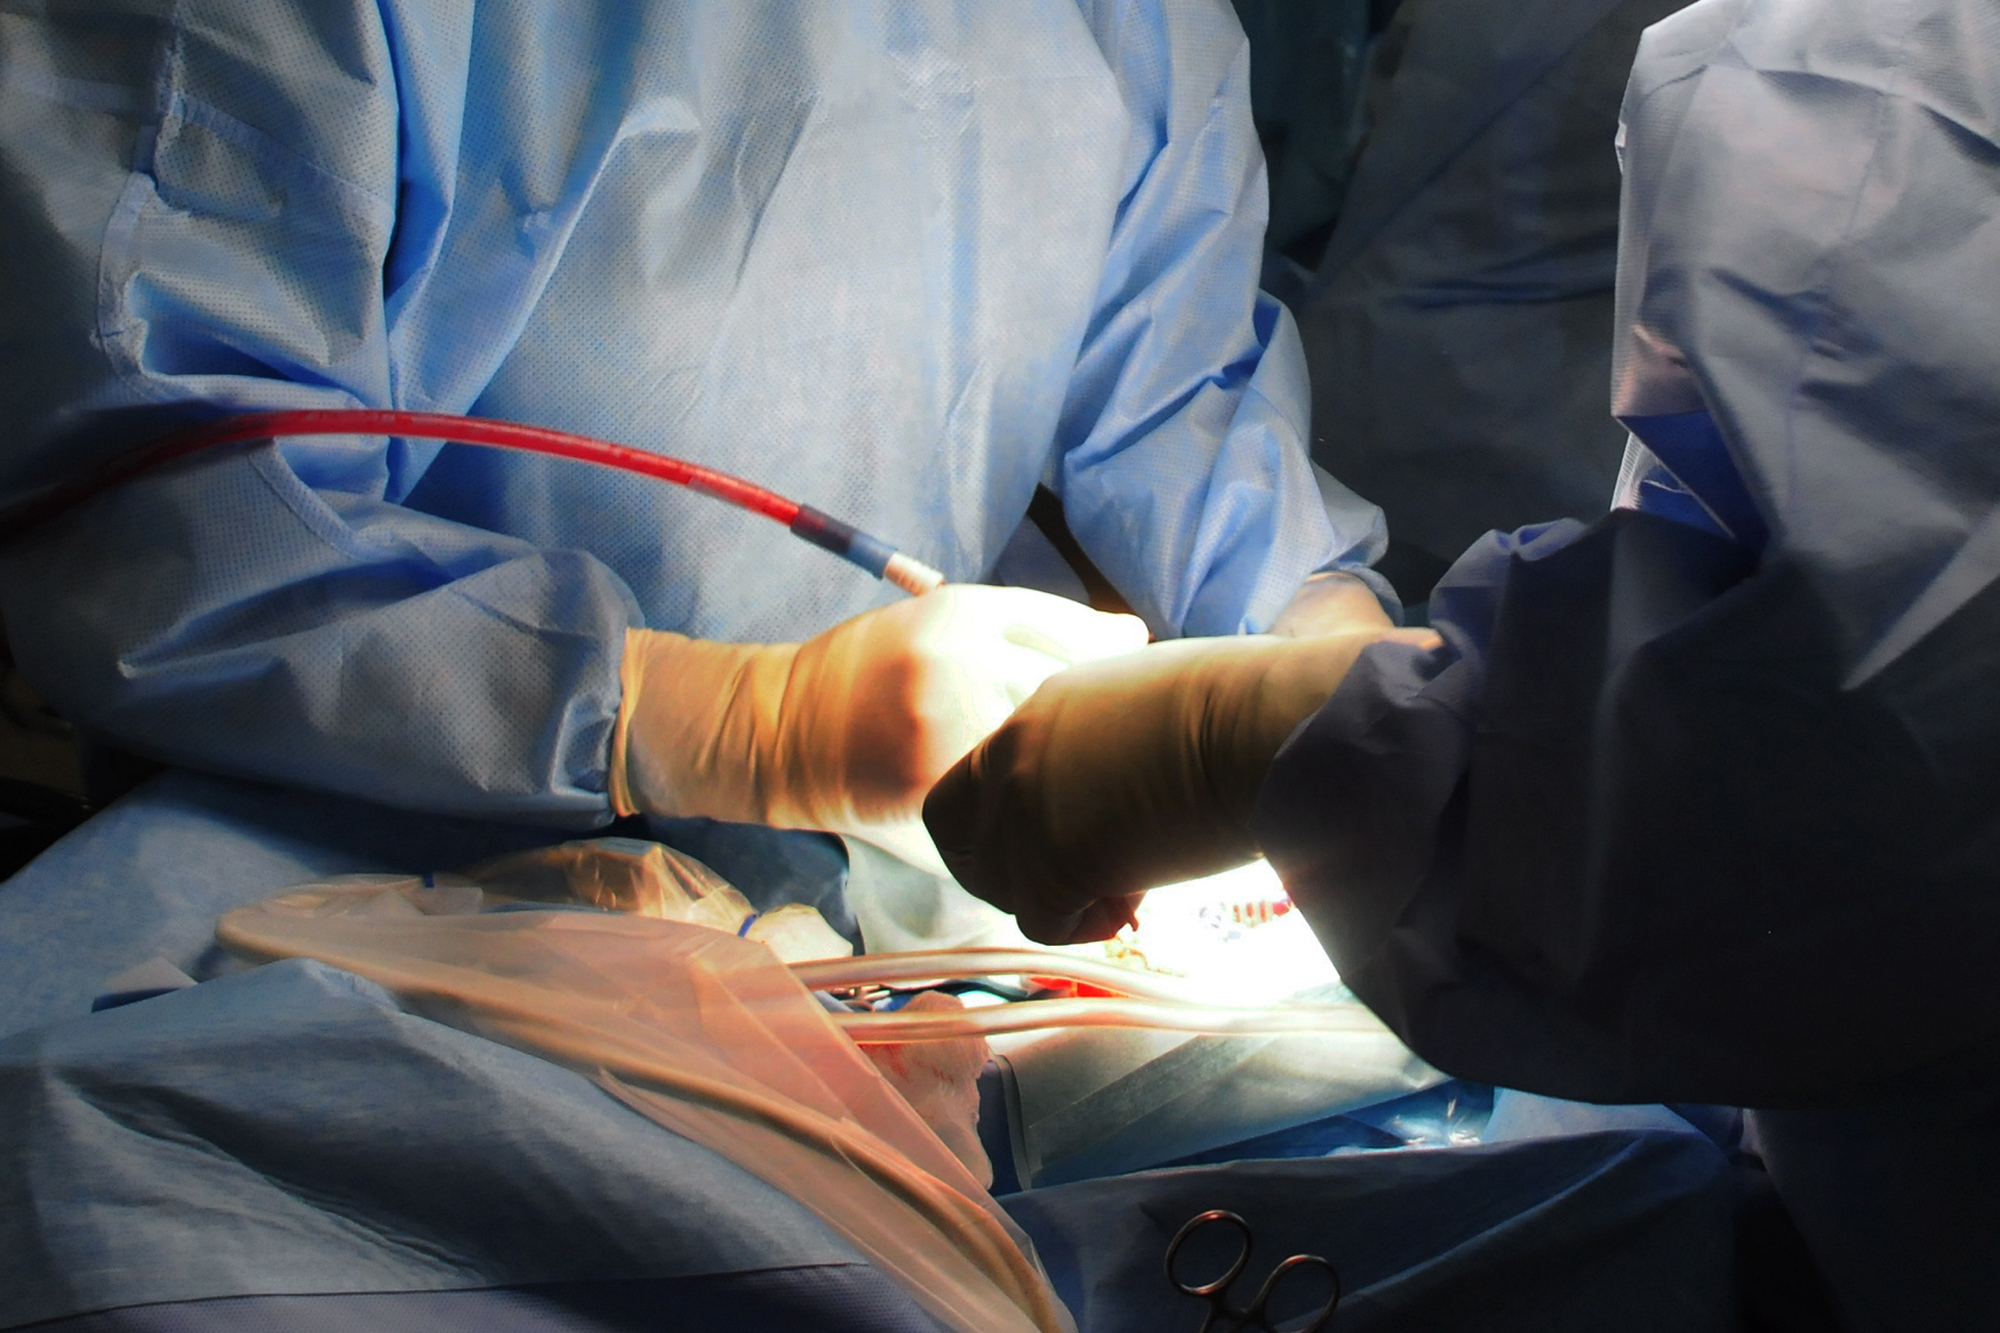 Chirurgia pancreas, alta mortalit in 300 centri, evitabili 130 decessi annui